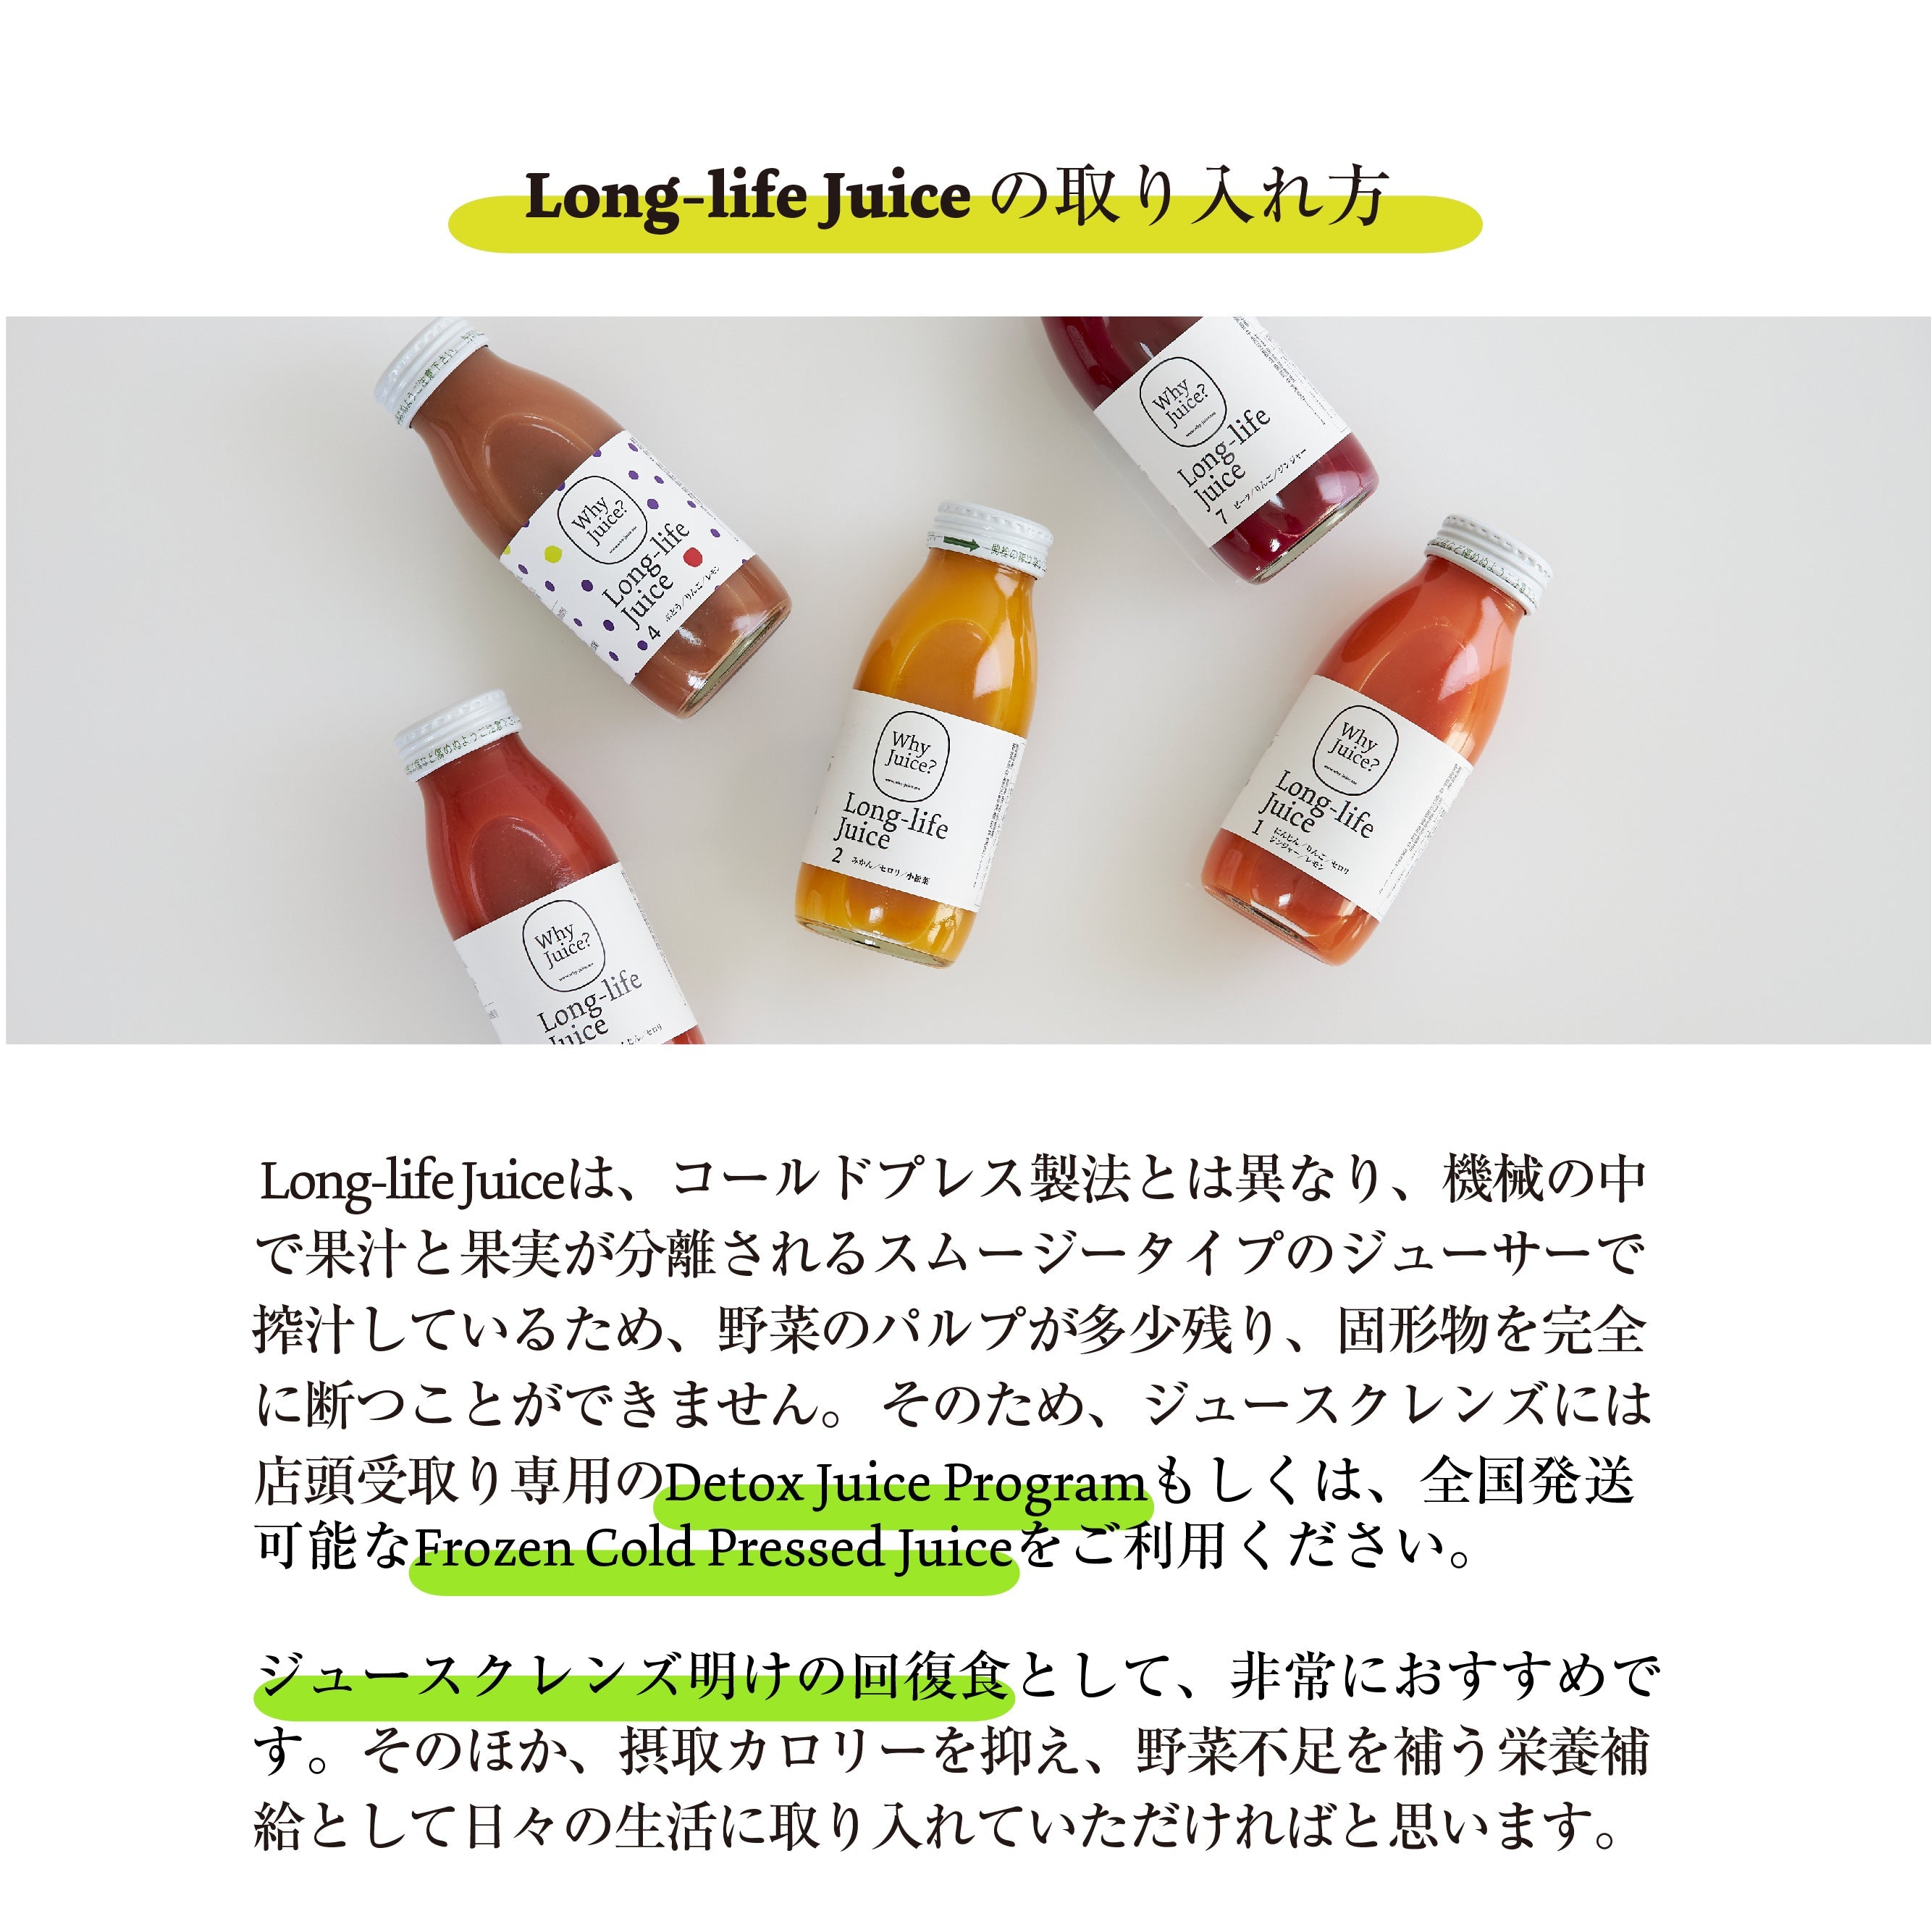 【無添加ジュース】Long-life Juice 3本セット-初めてのWhy Juice?お試し